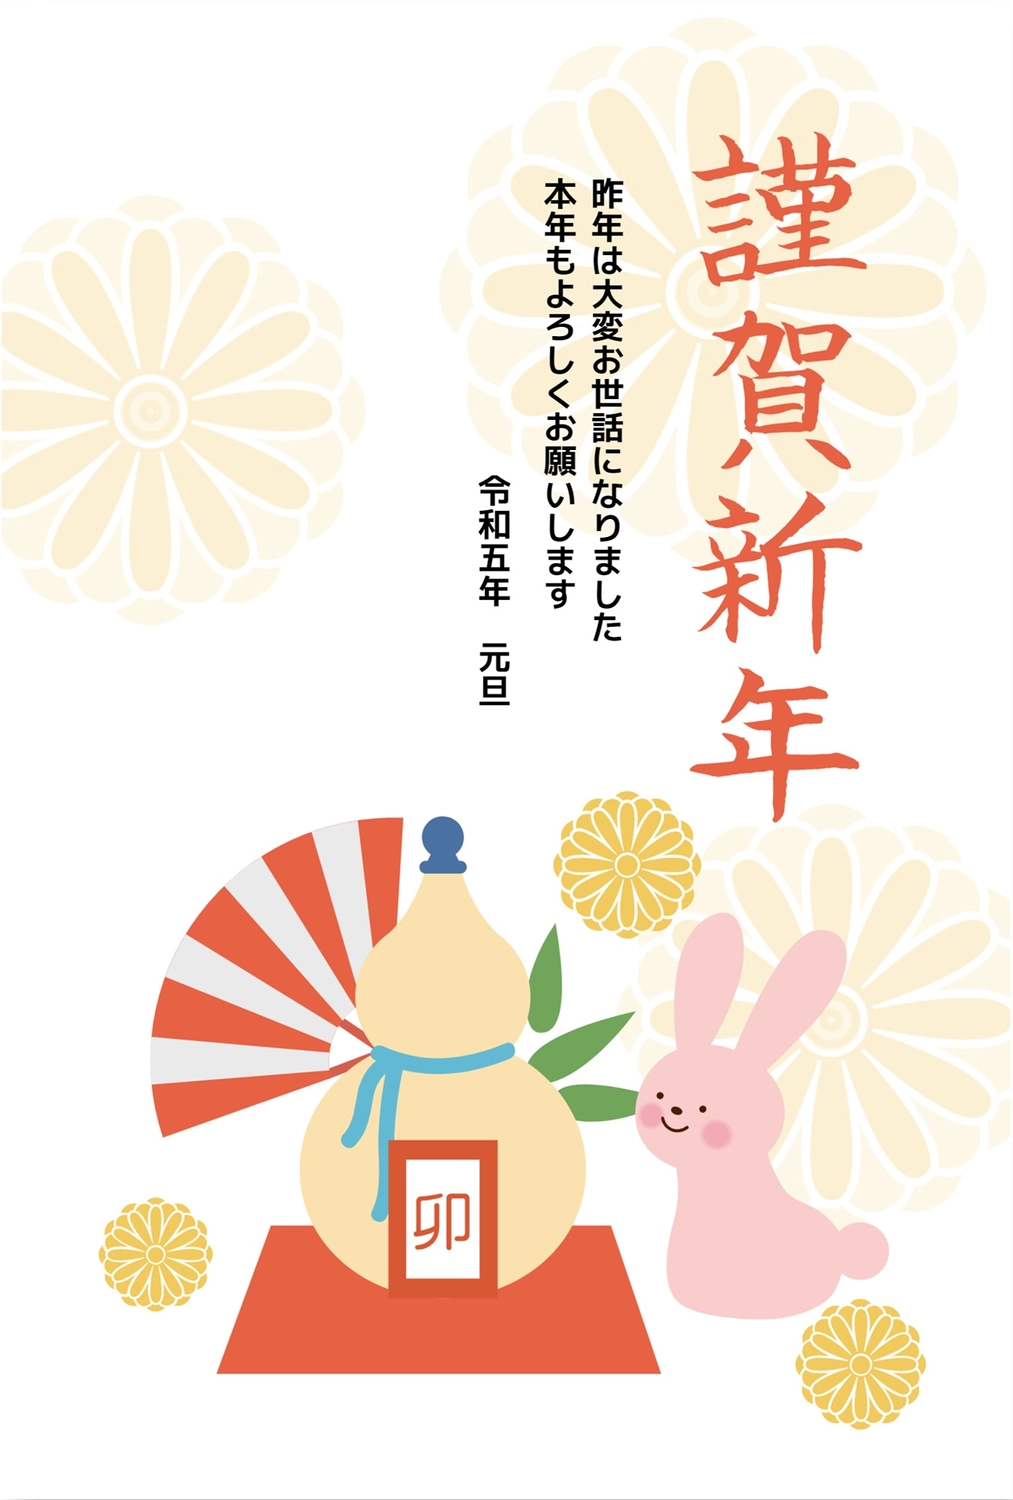 瓢箪とうさぎの年賀状, animal, concord, Flower pattern, New Year Card template